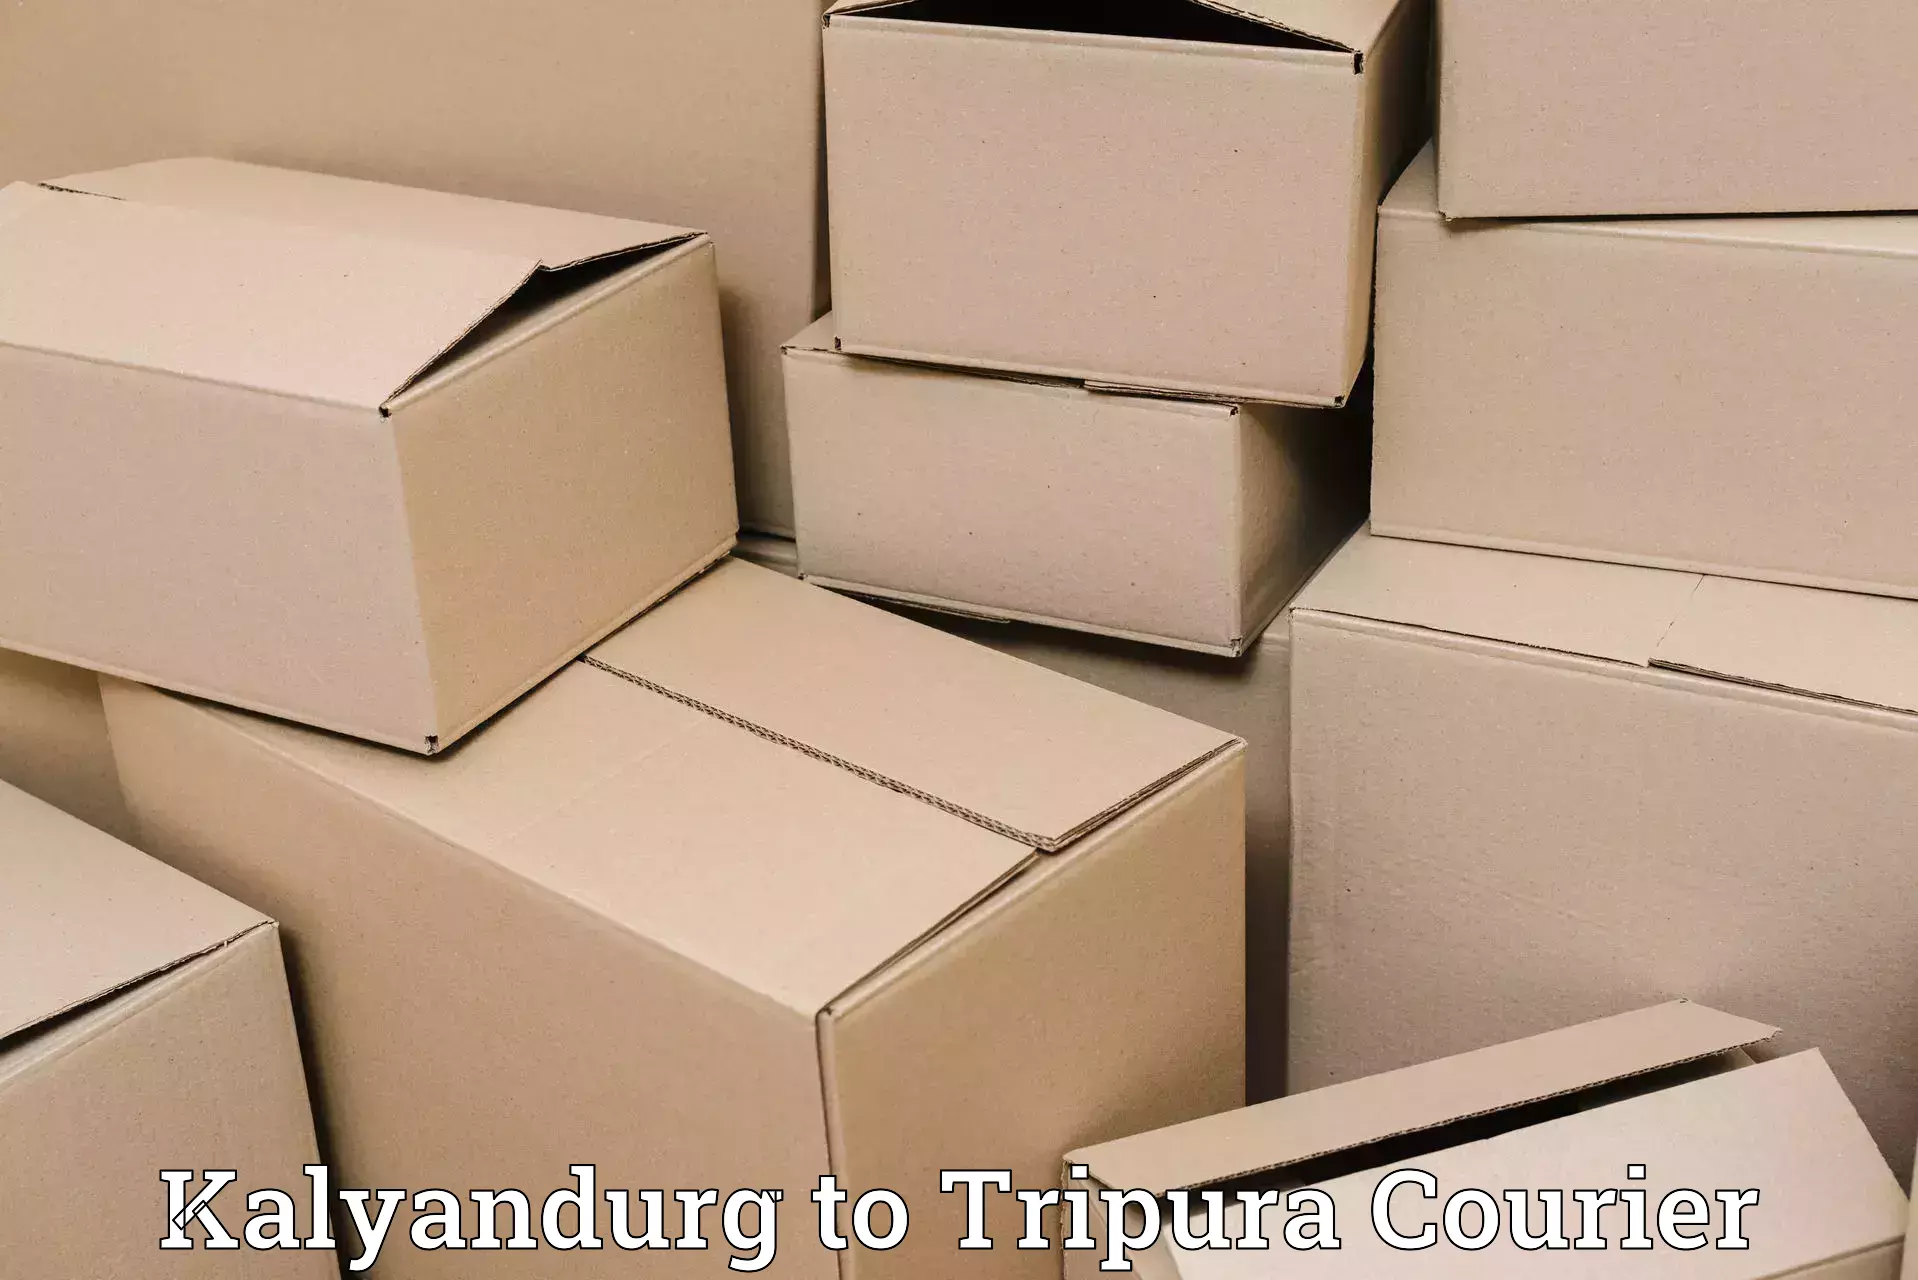 Customer-centric shipping Kalyandurg to Kamalpur